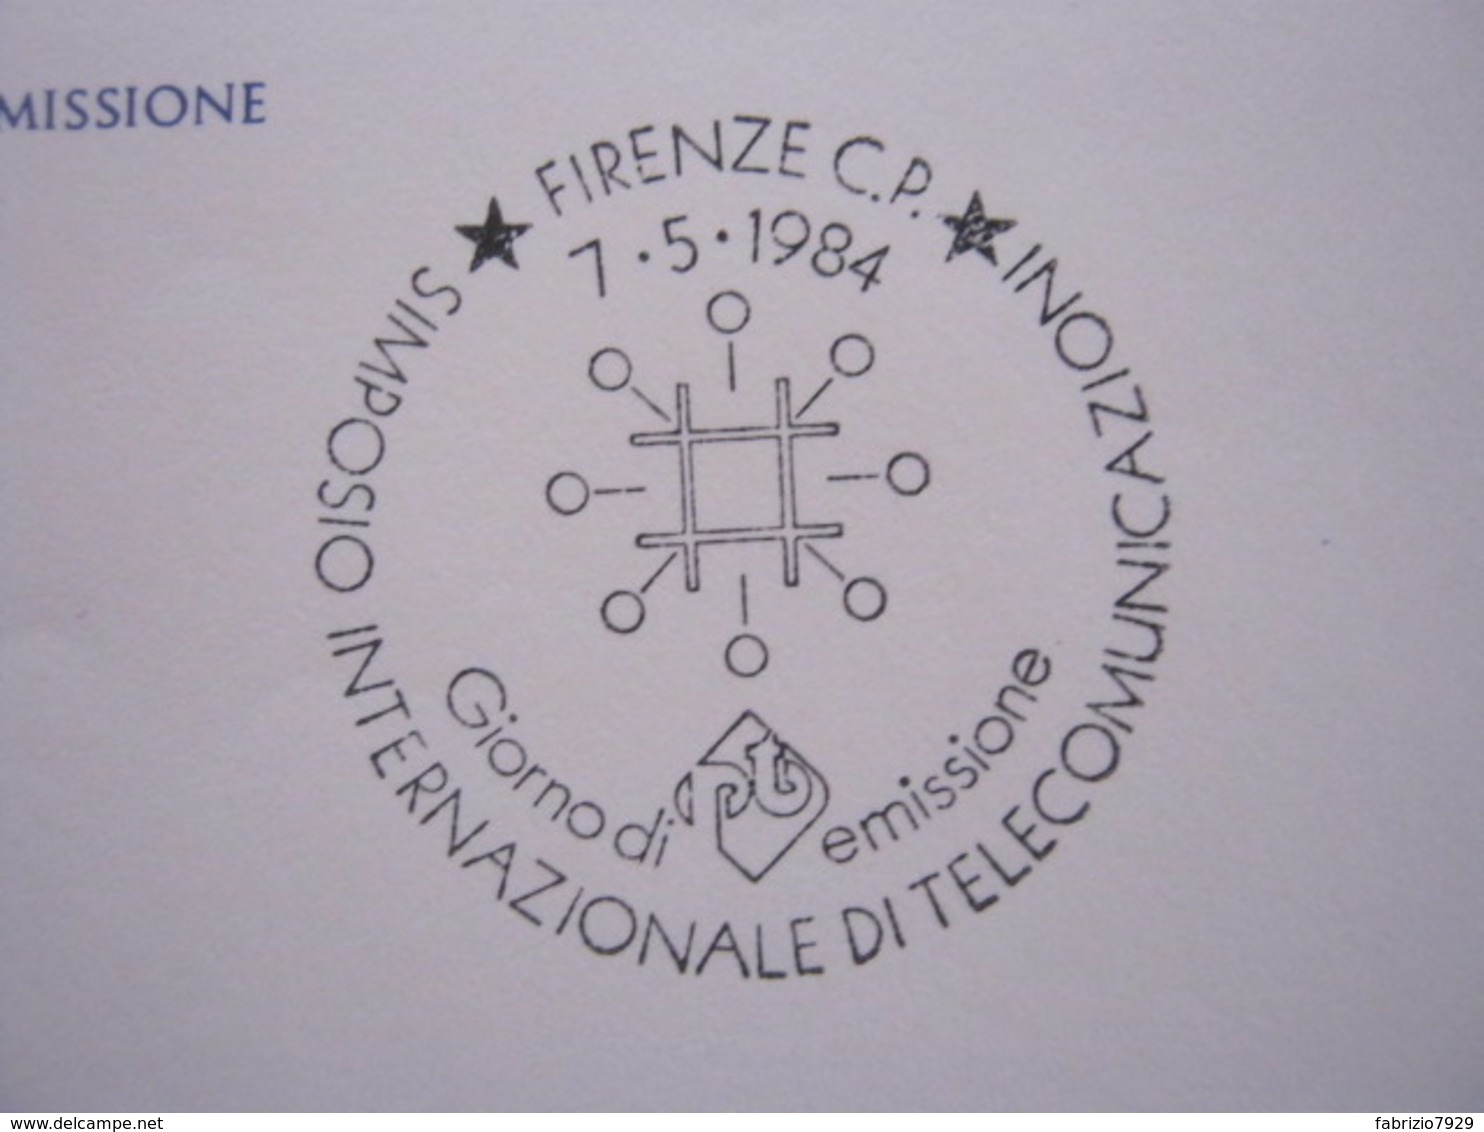 A.01 ITALIA ANNULLO - 1984 FIRENZE FDC SIMPOSIO INTERNAZIONALE TELECOMUNICAZIONI TELECOM TELEFONIA TELEPHON - Telecom